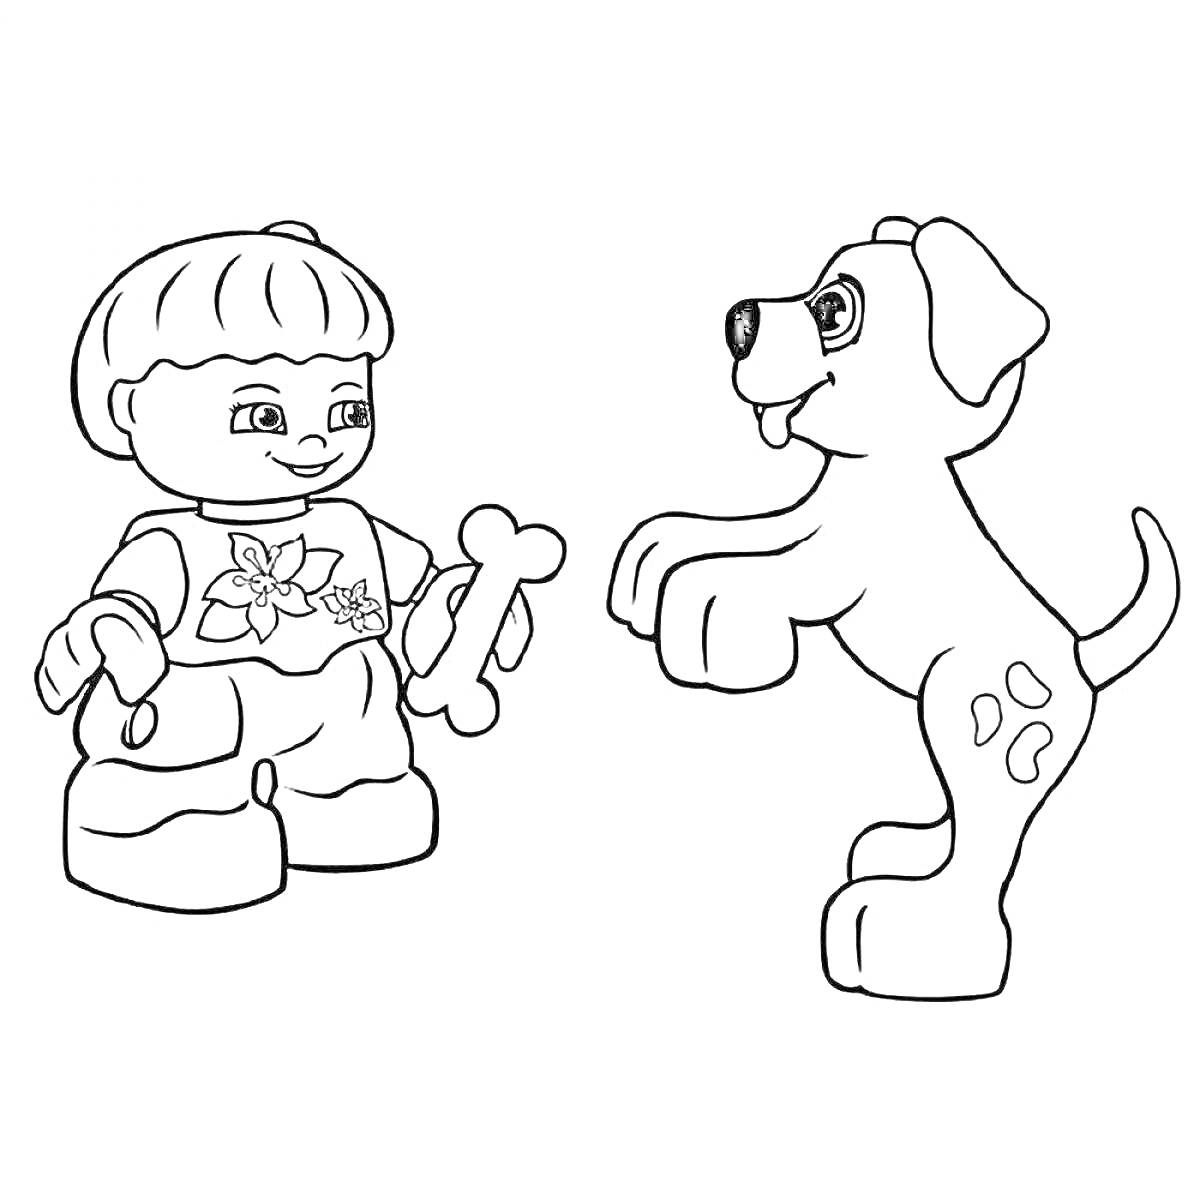 Раскраска Ребенок с игрушечной косточкой и собака из Лего Дупло